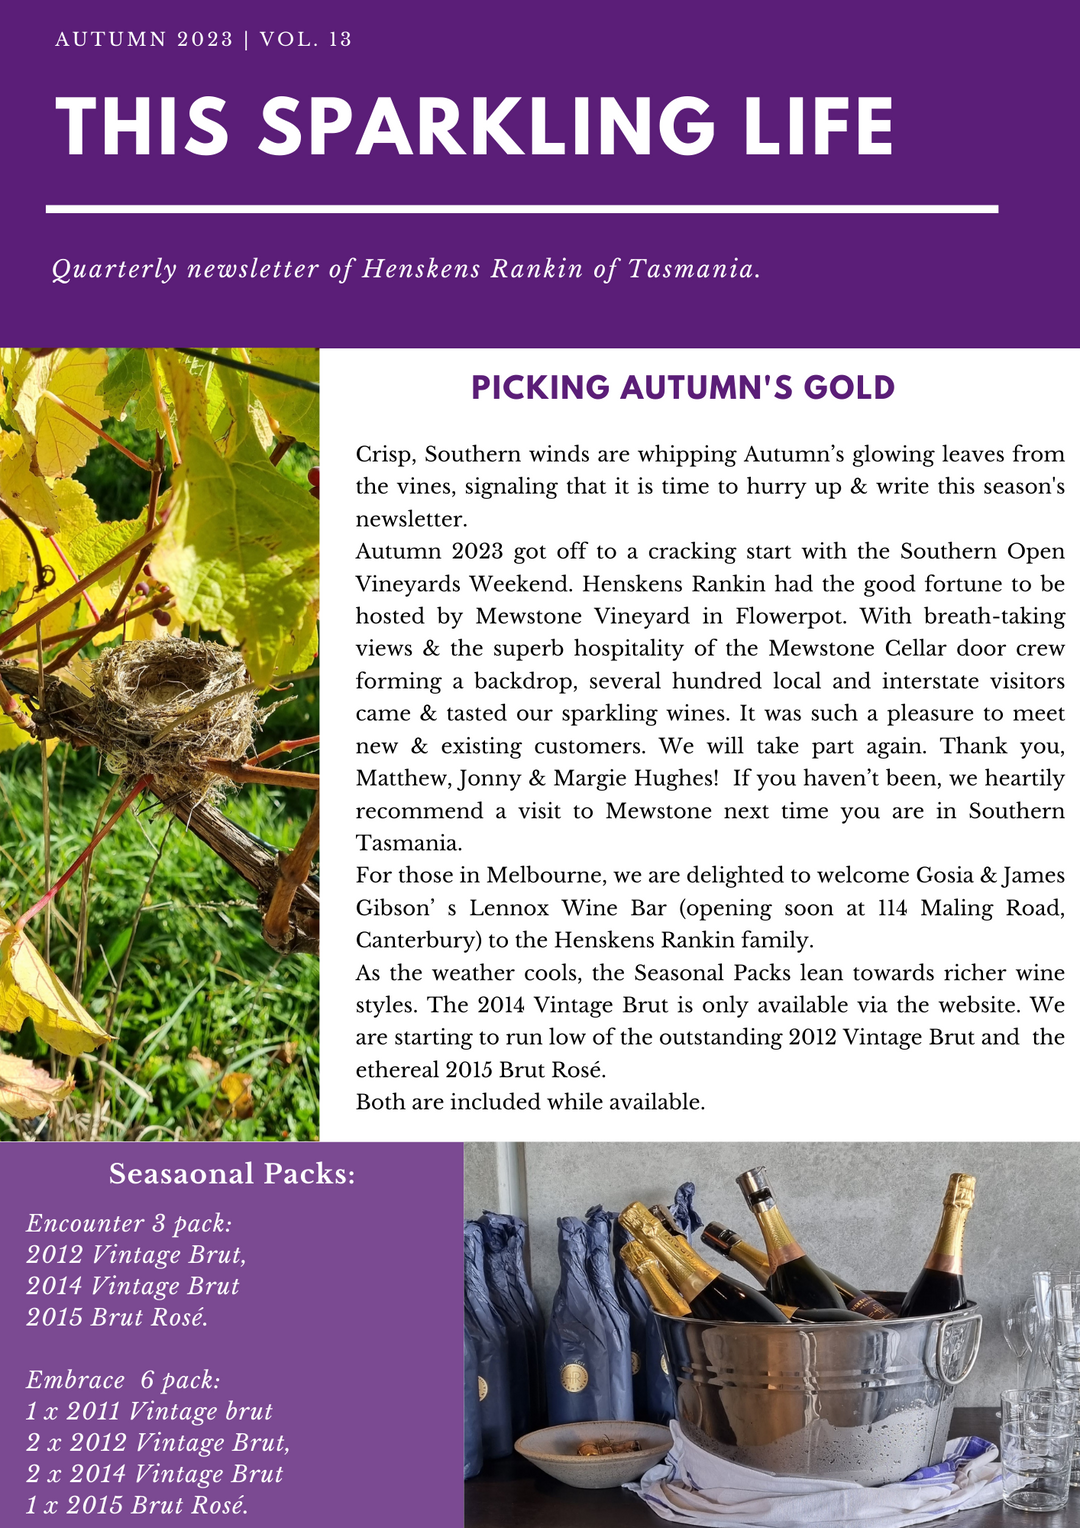 Autumn 2023: Picking Autumn's gold.